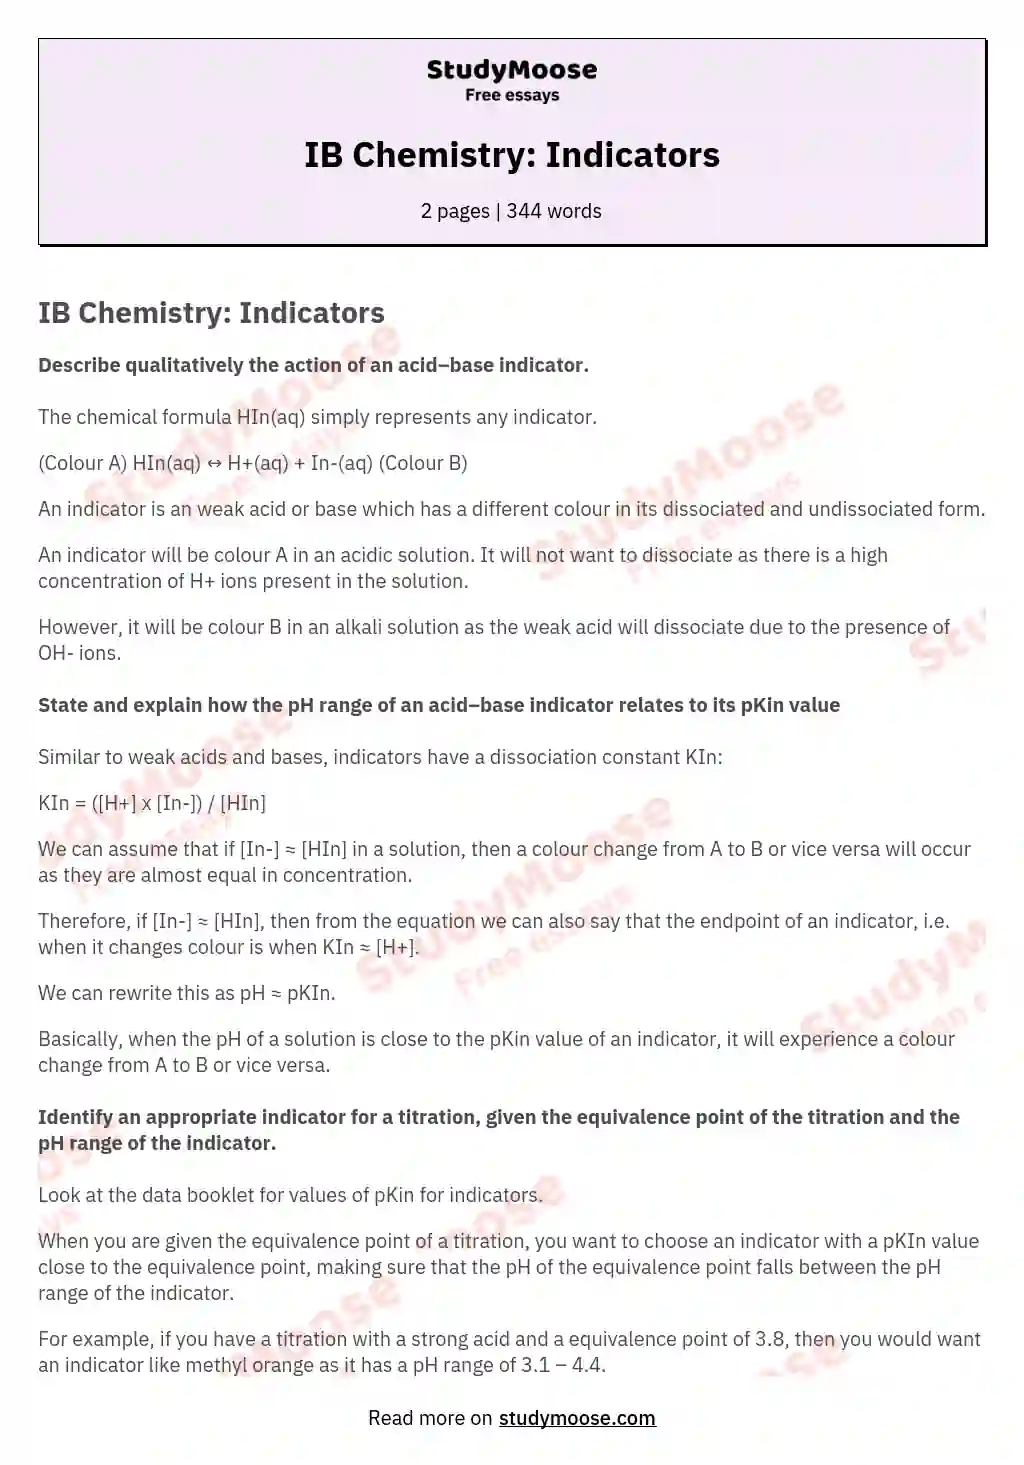 IB Chemistry: Indicators essay